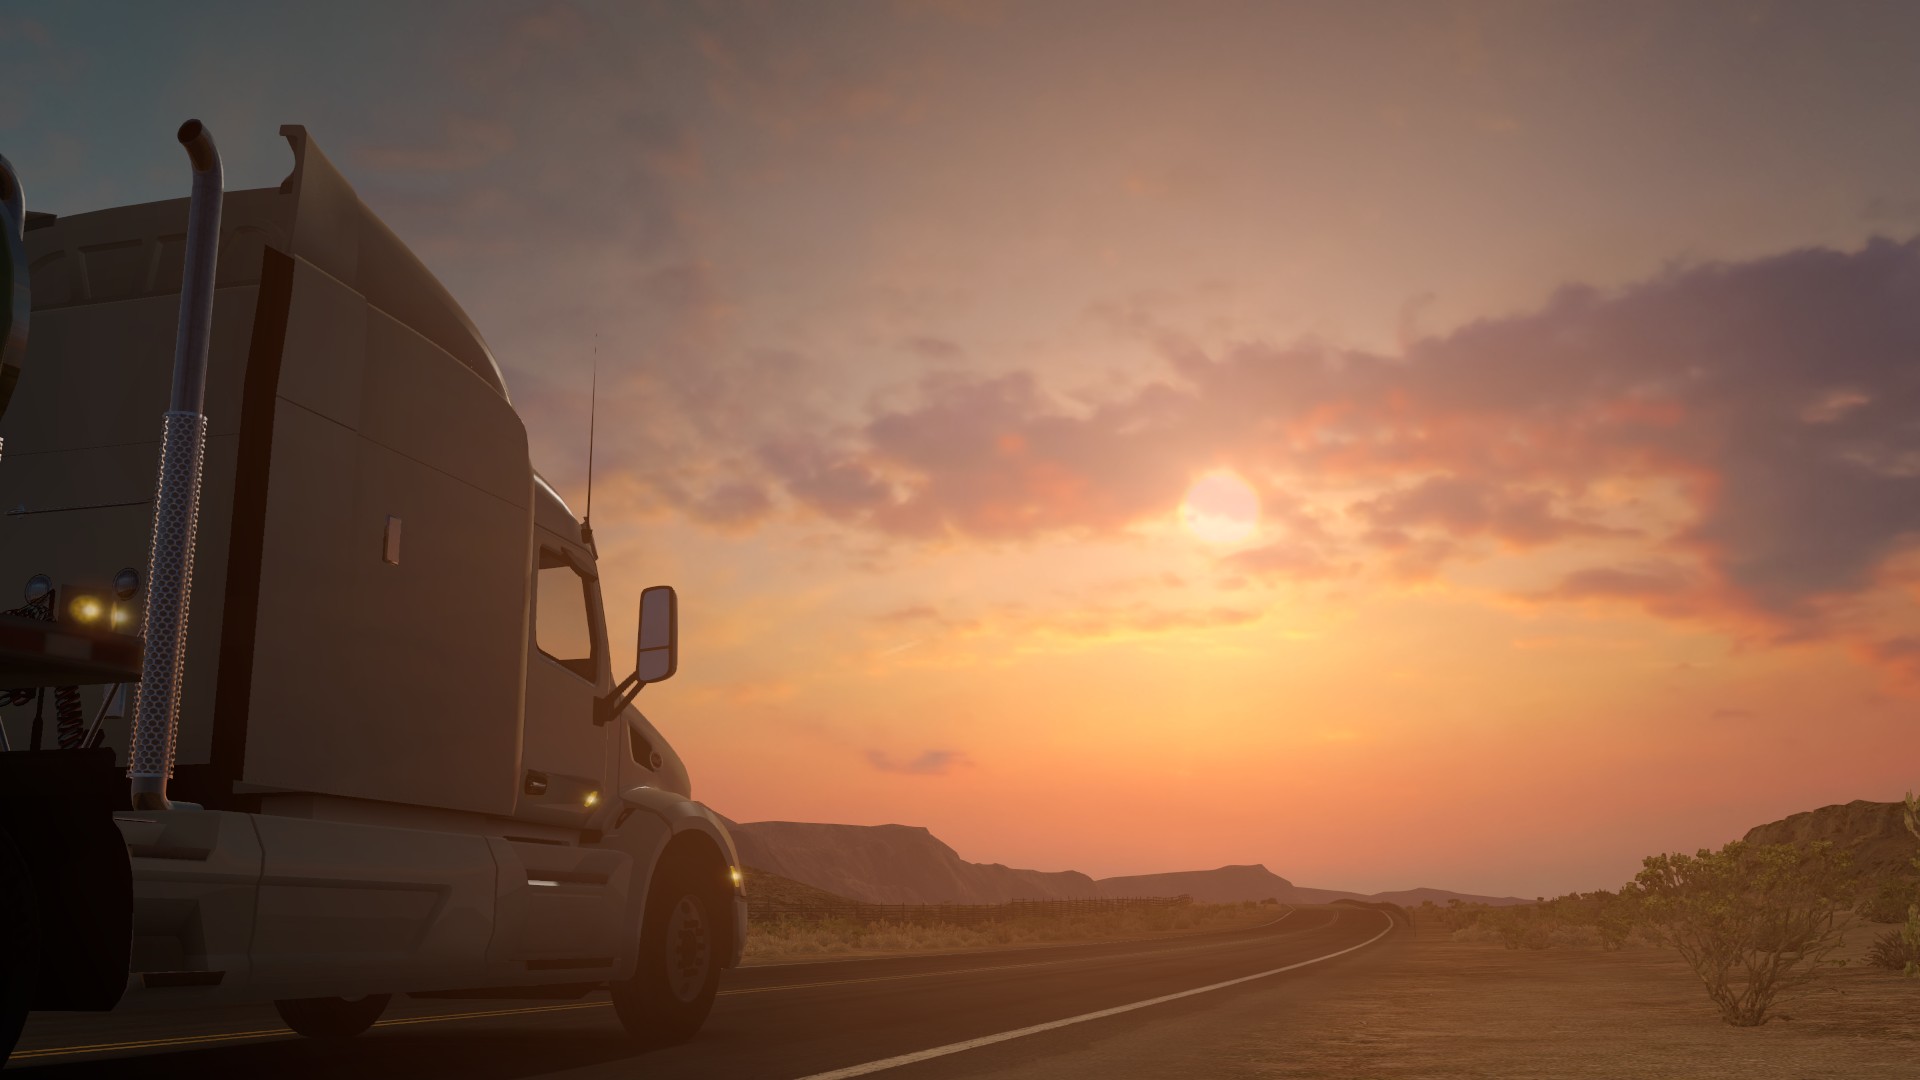 american truck simulator download 2018